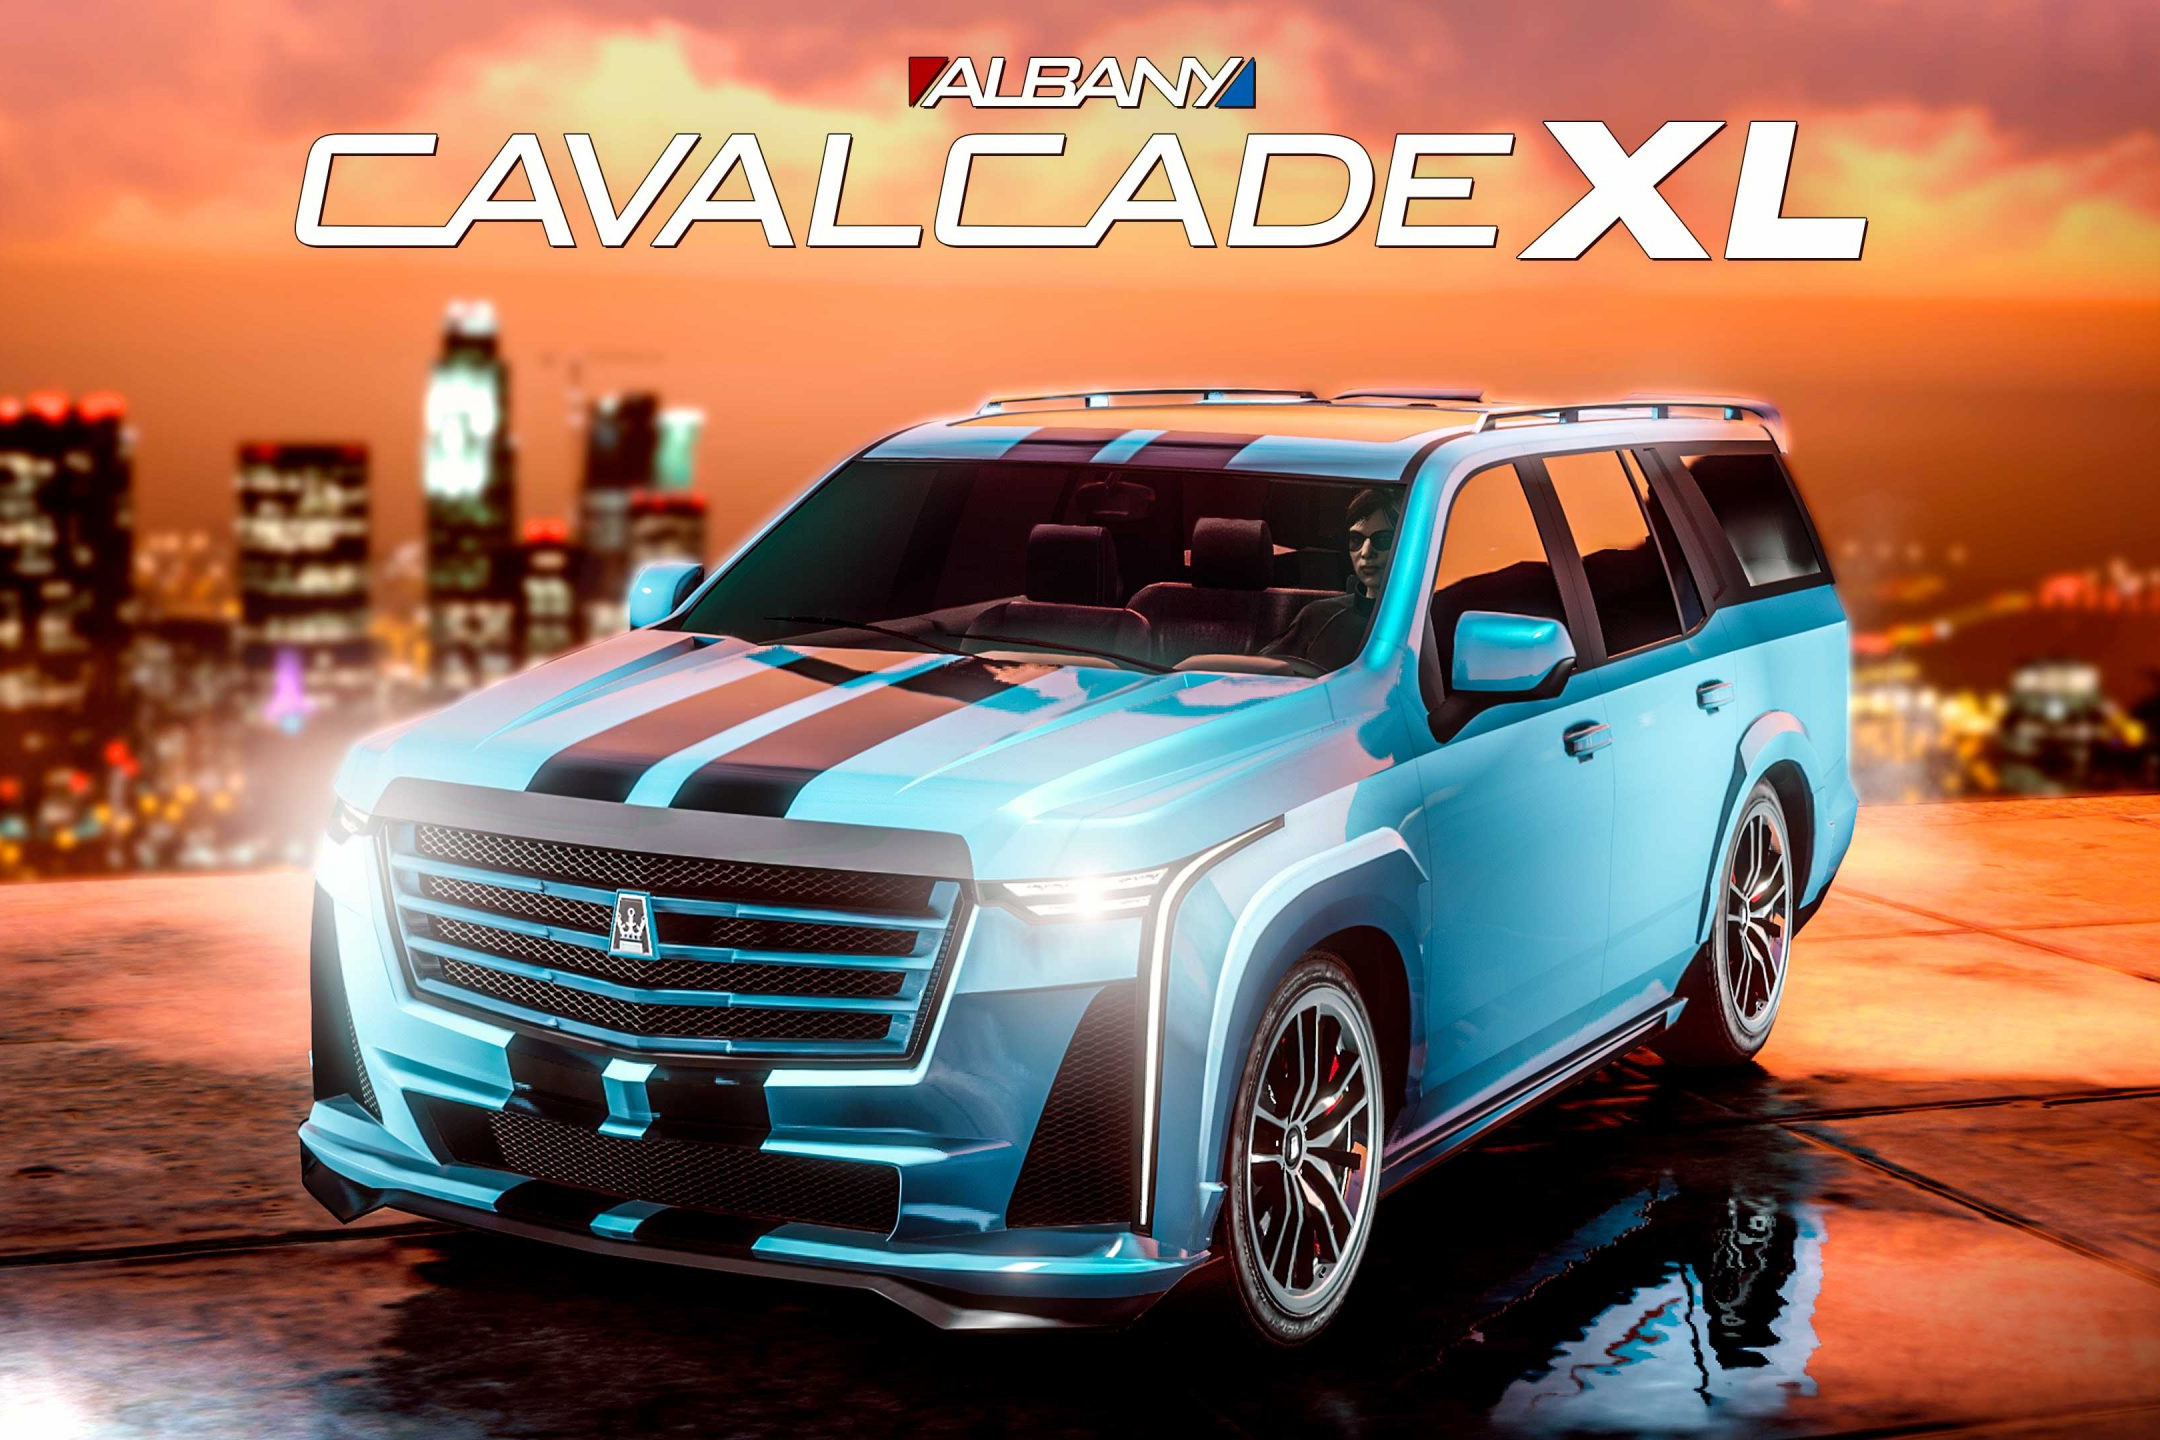 L'Albany Cavalcade XL est maintenant disponible dans GTA Online